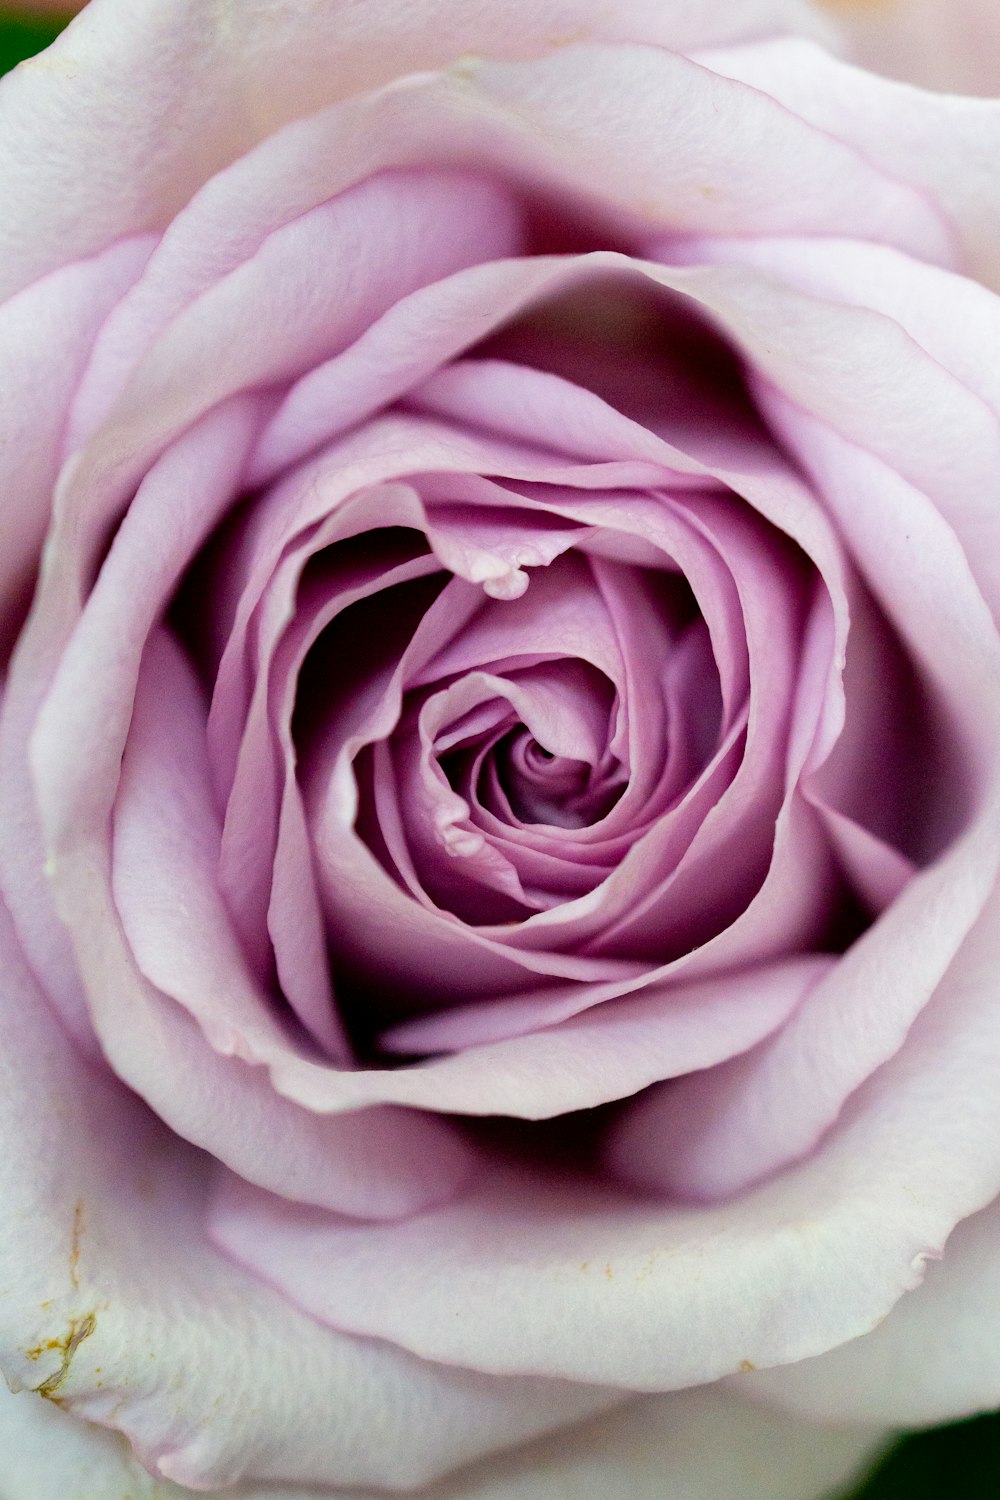 クローズアップ写真で白と紫のバラの写真 Unsplashの無料薔薇写真